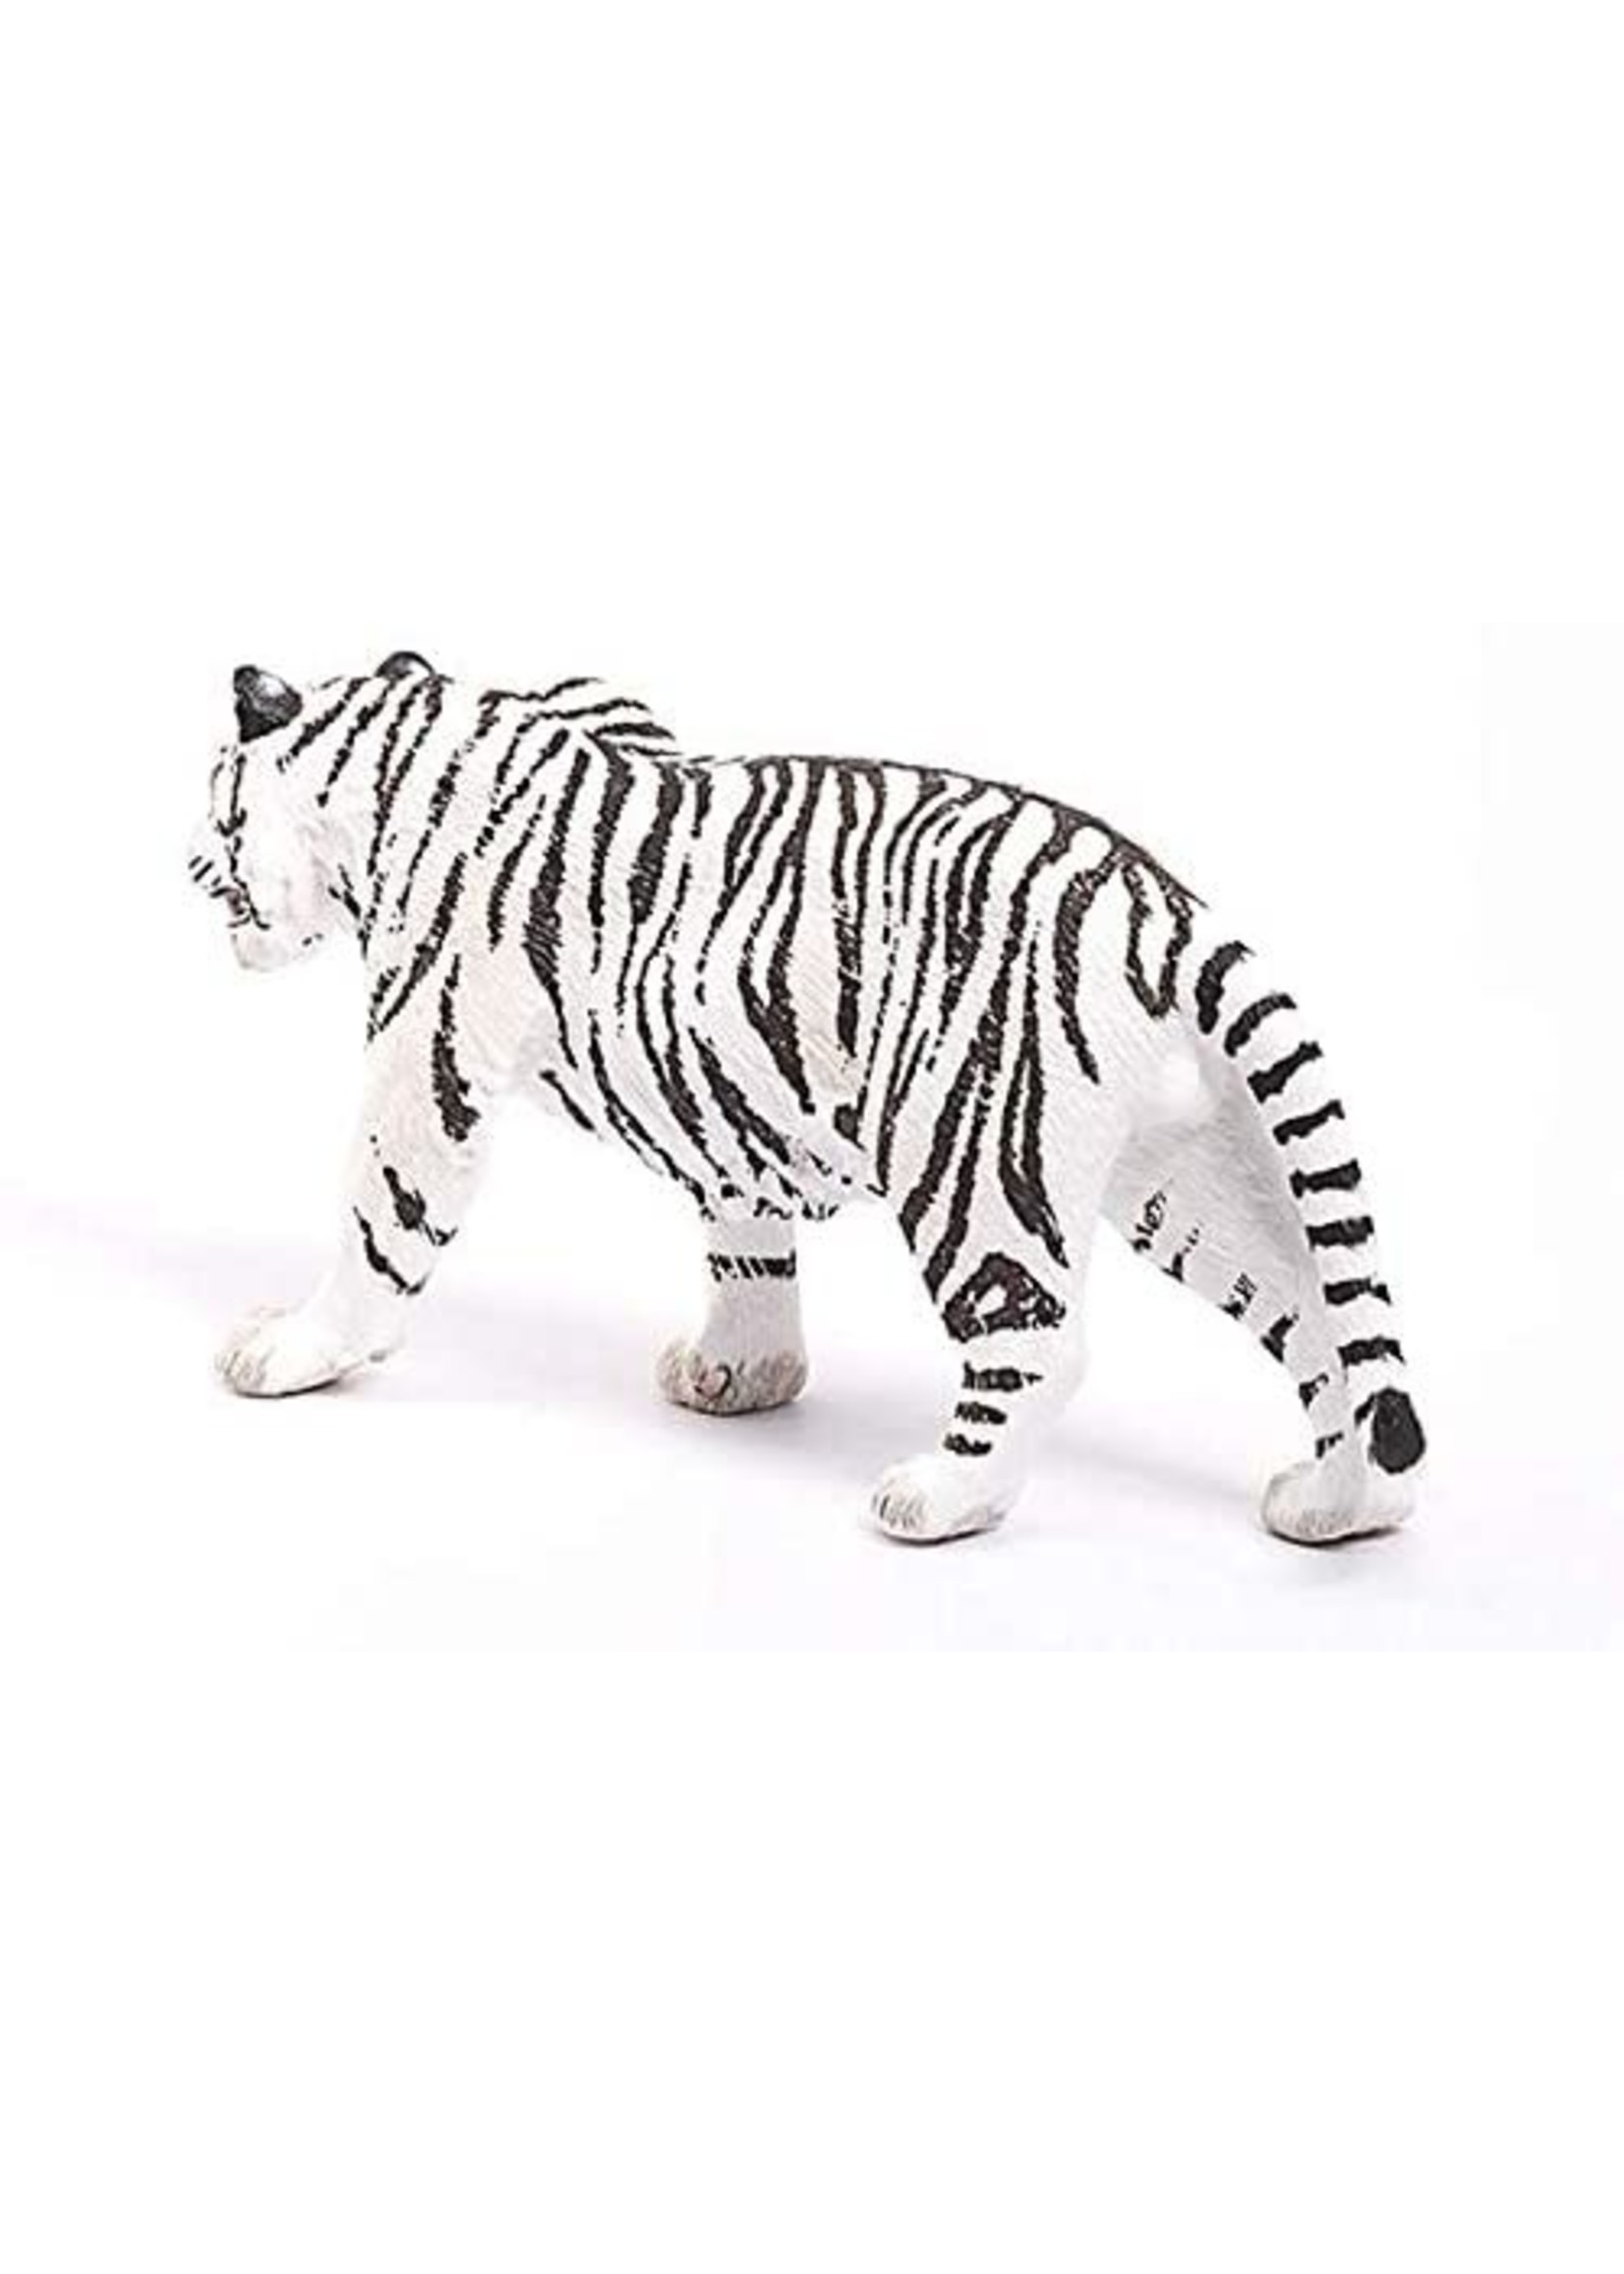 Schleich 14731 - Tiger, White